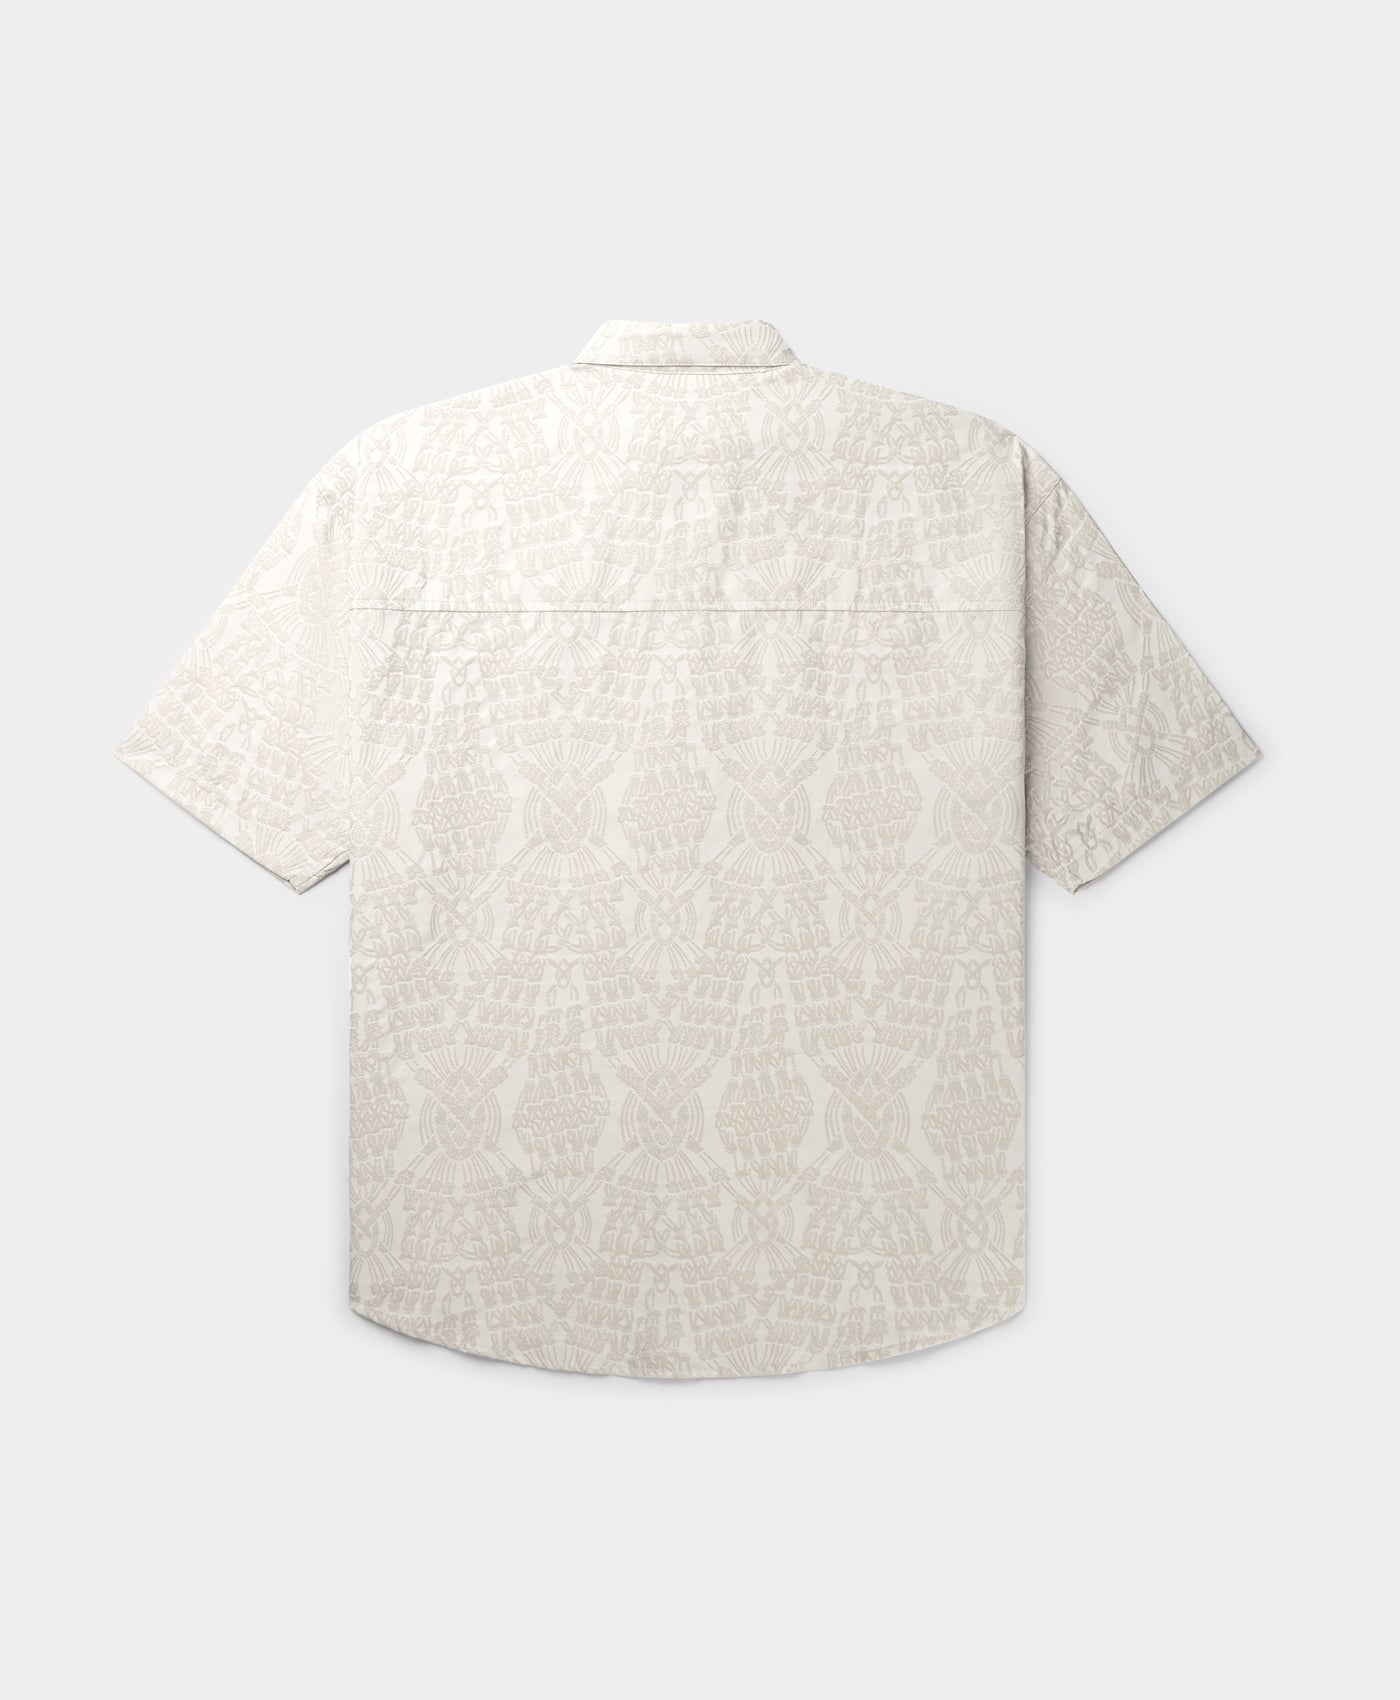 DP - Moonstruck Beige Zuri Macrame Jacquard Relaxed Shirt - Packshot - Rear